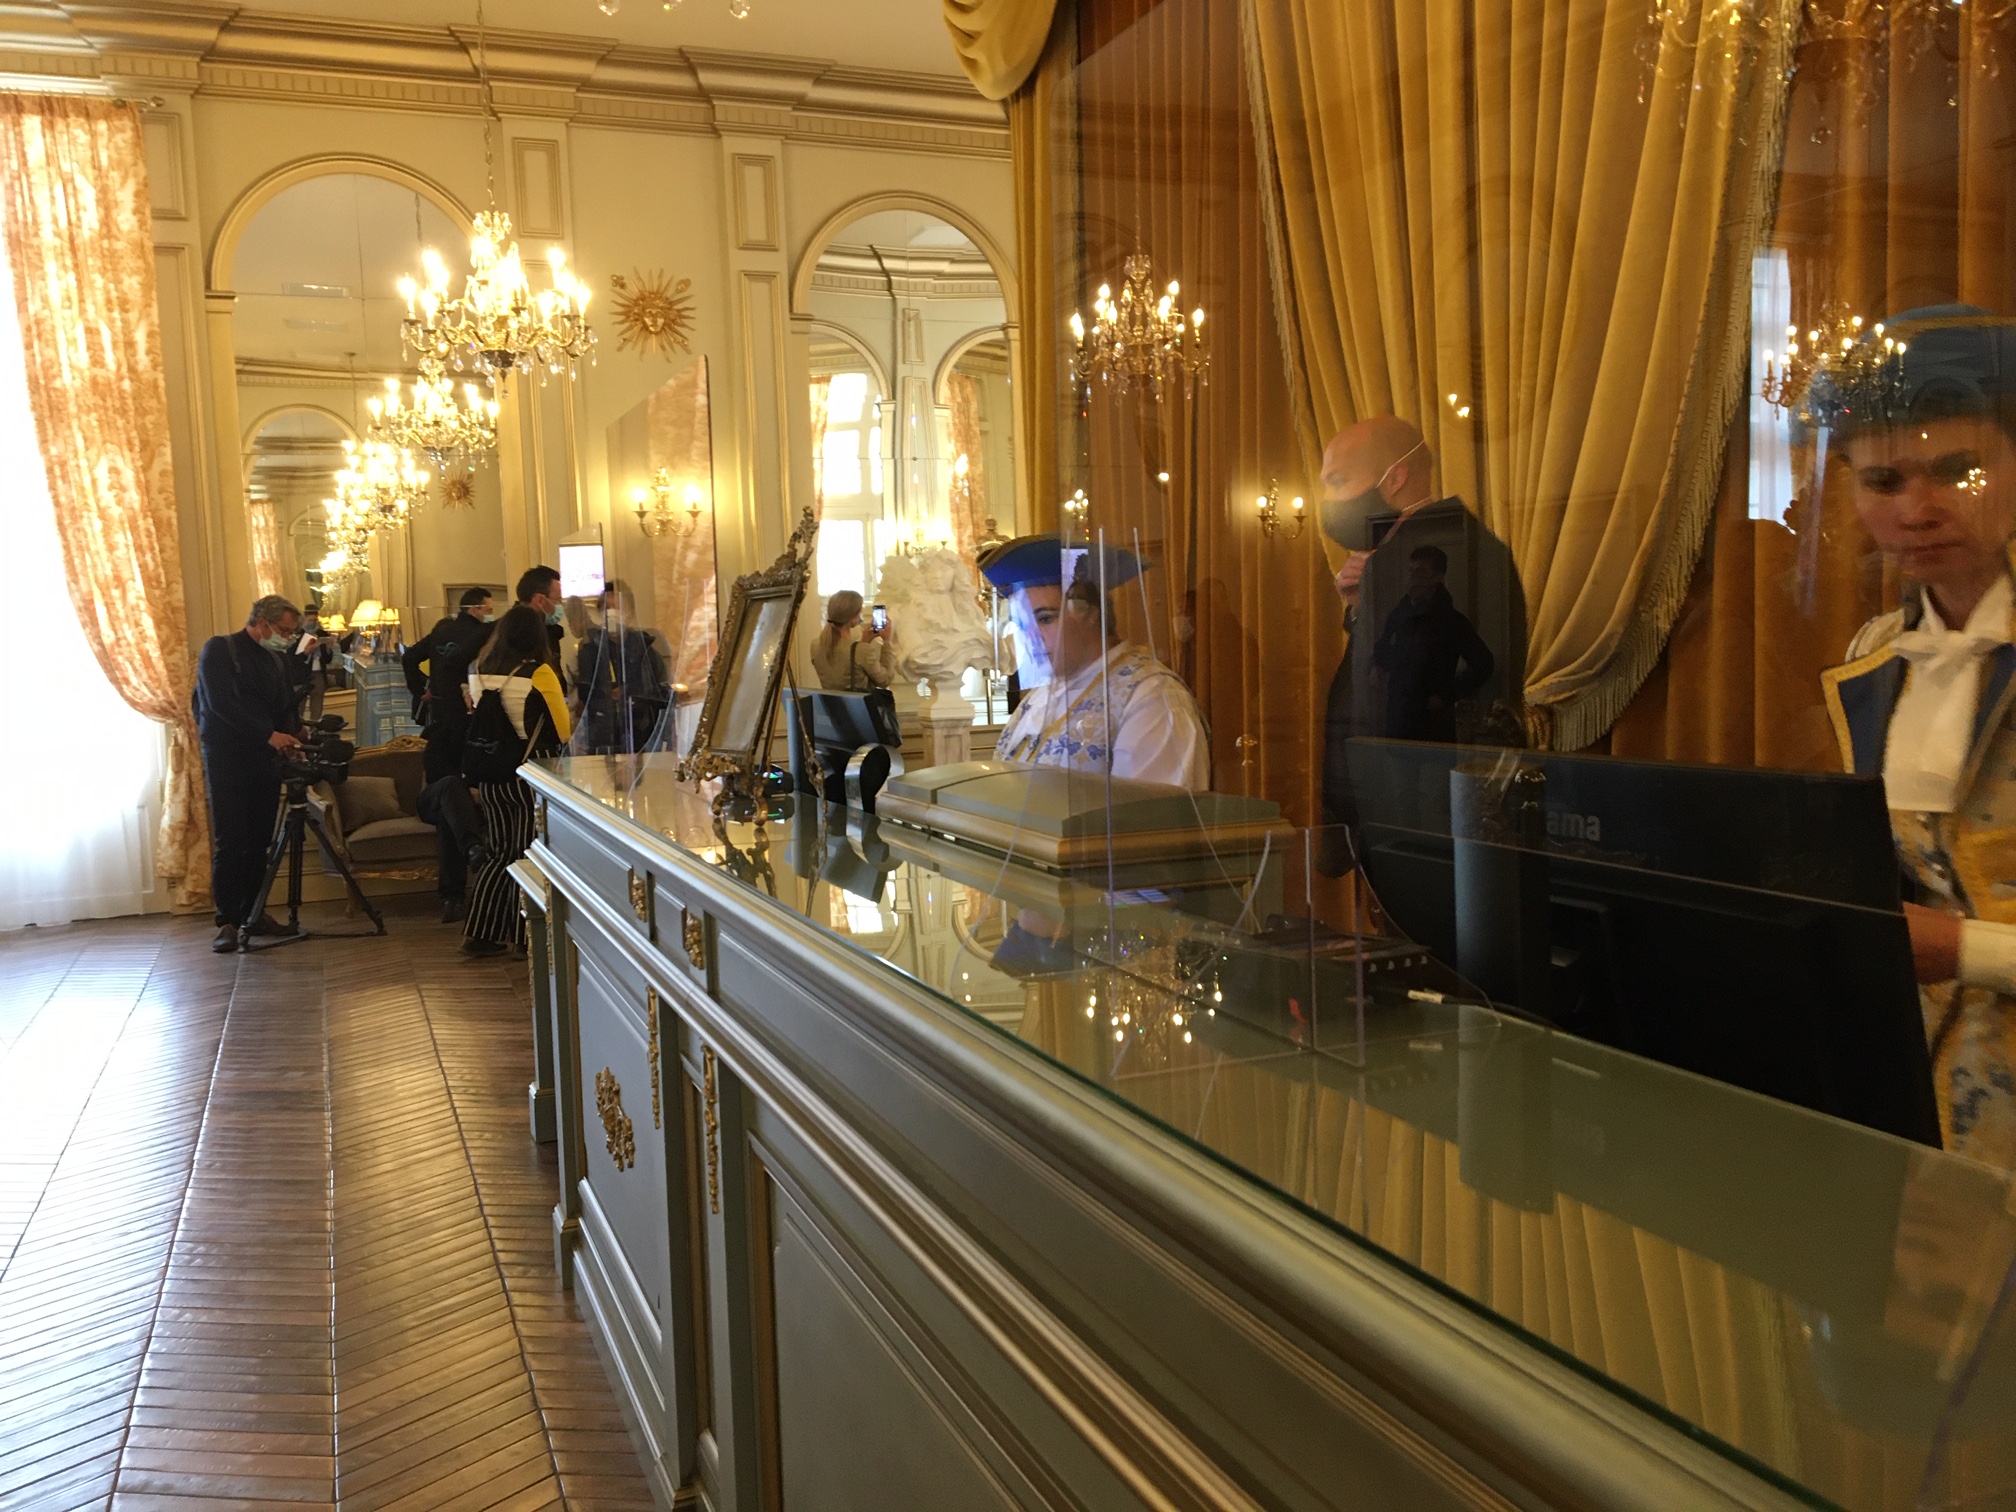 Accueil hotel Puy du Fou - D Le Bars.JPG (1004 KB)